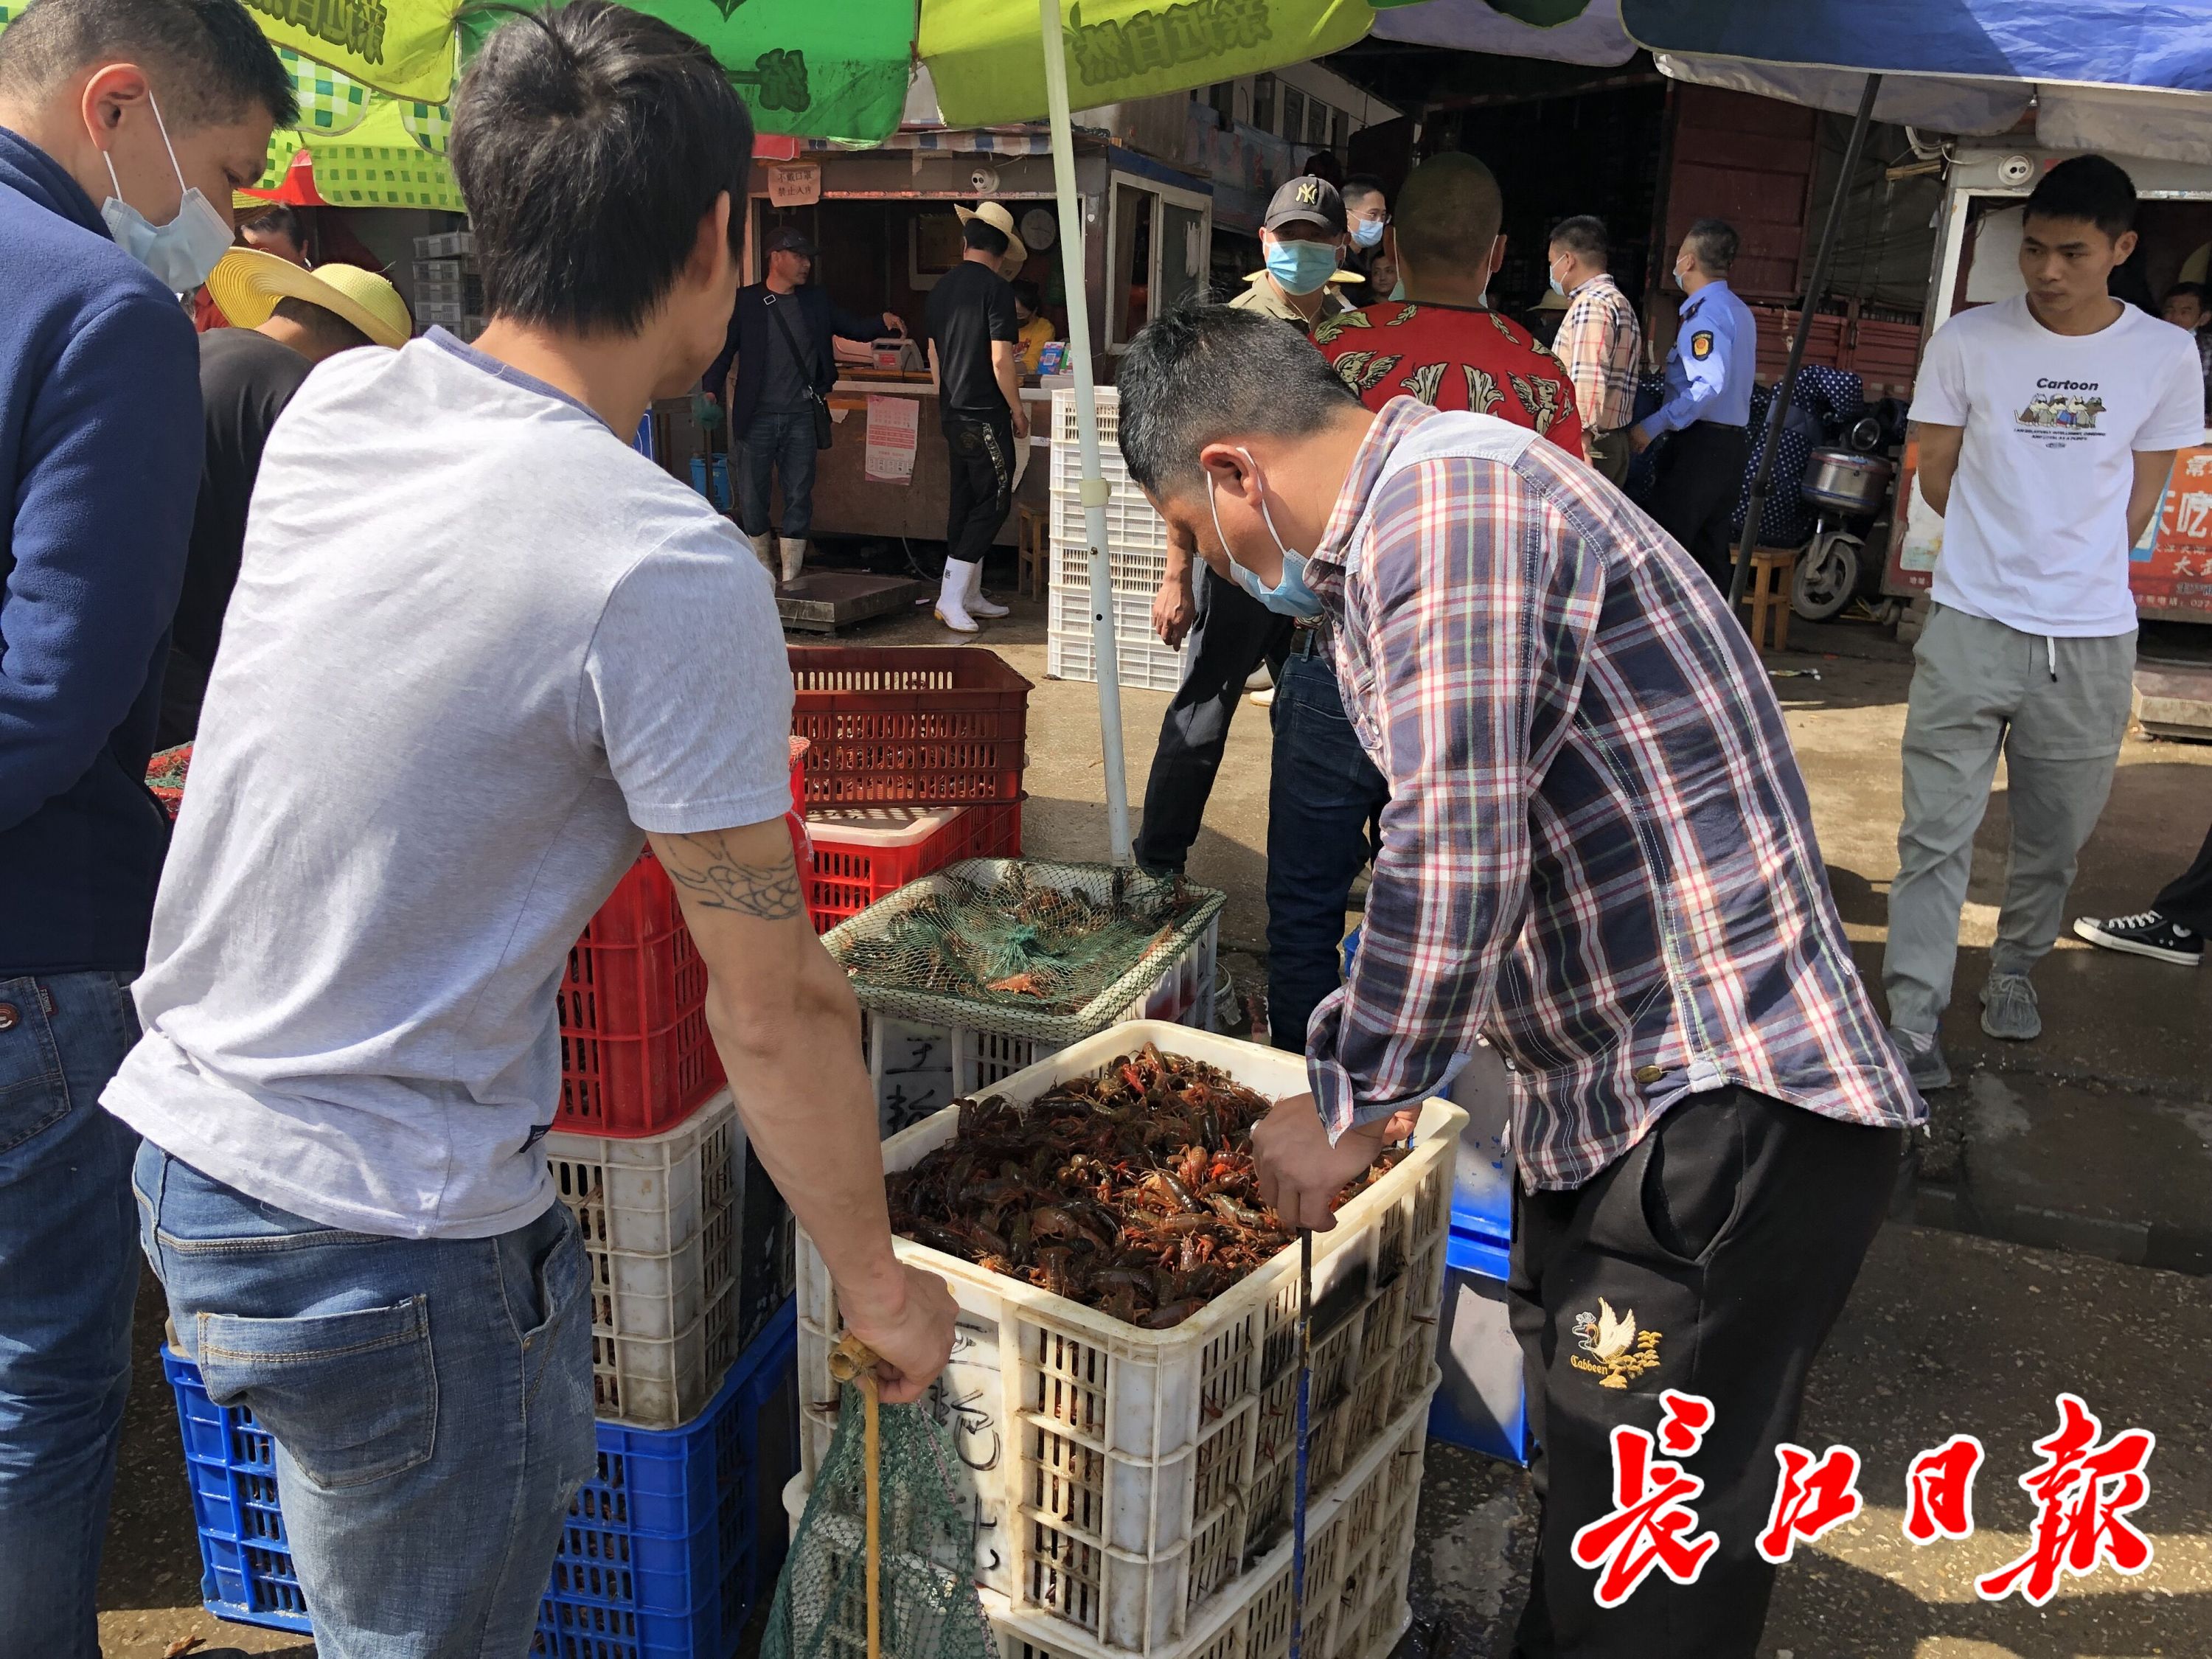 来武汉撮虾子!白沙洲农副产品大市场日批发龙虾100吨